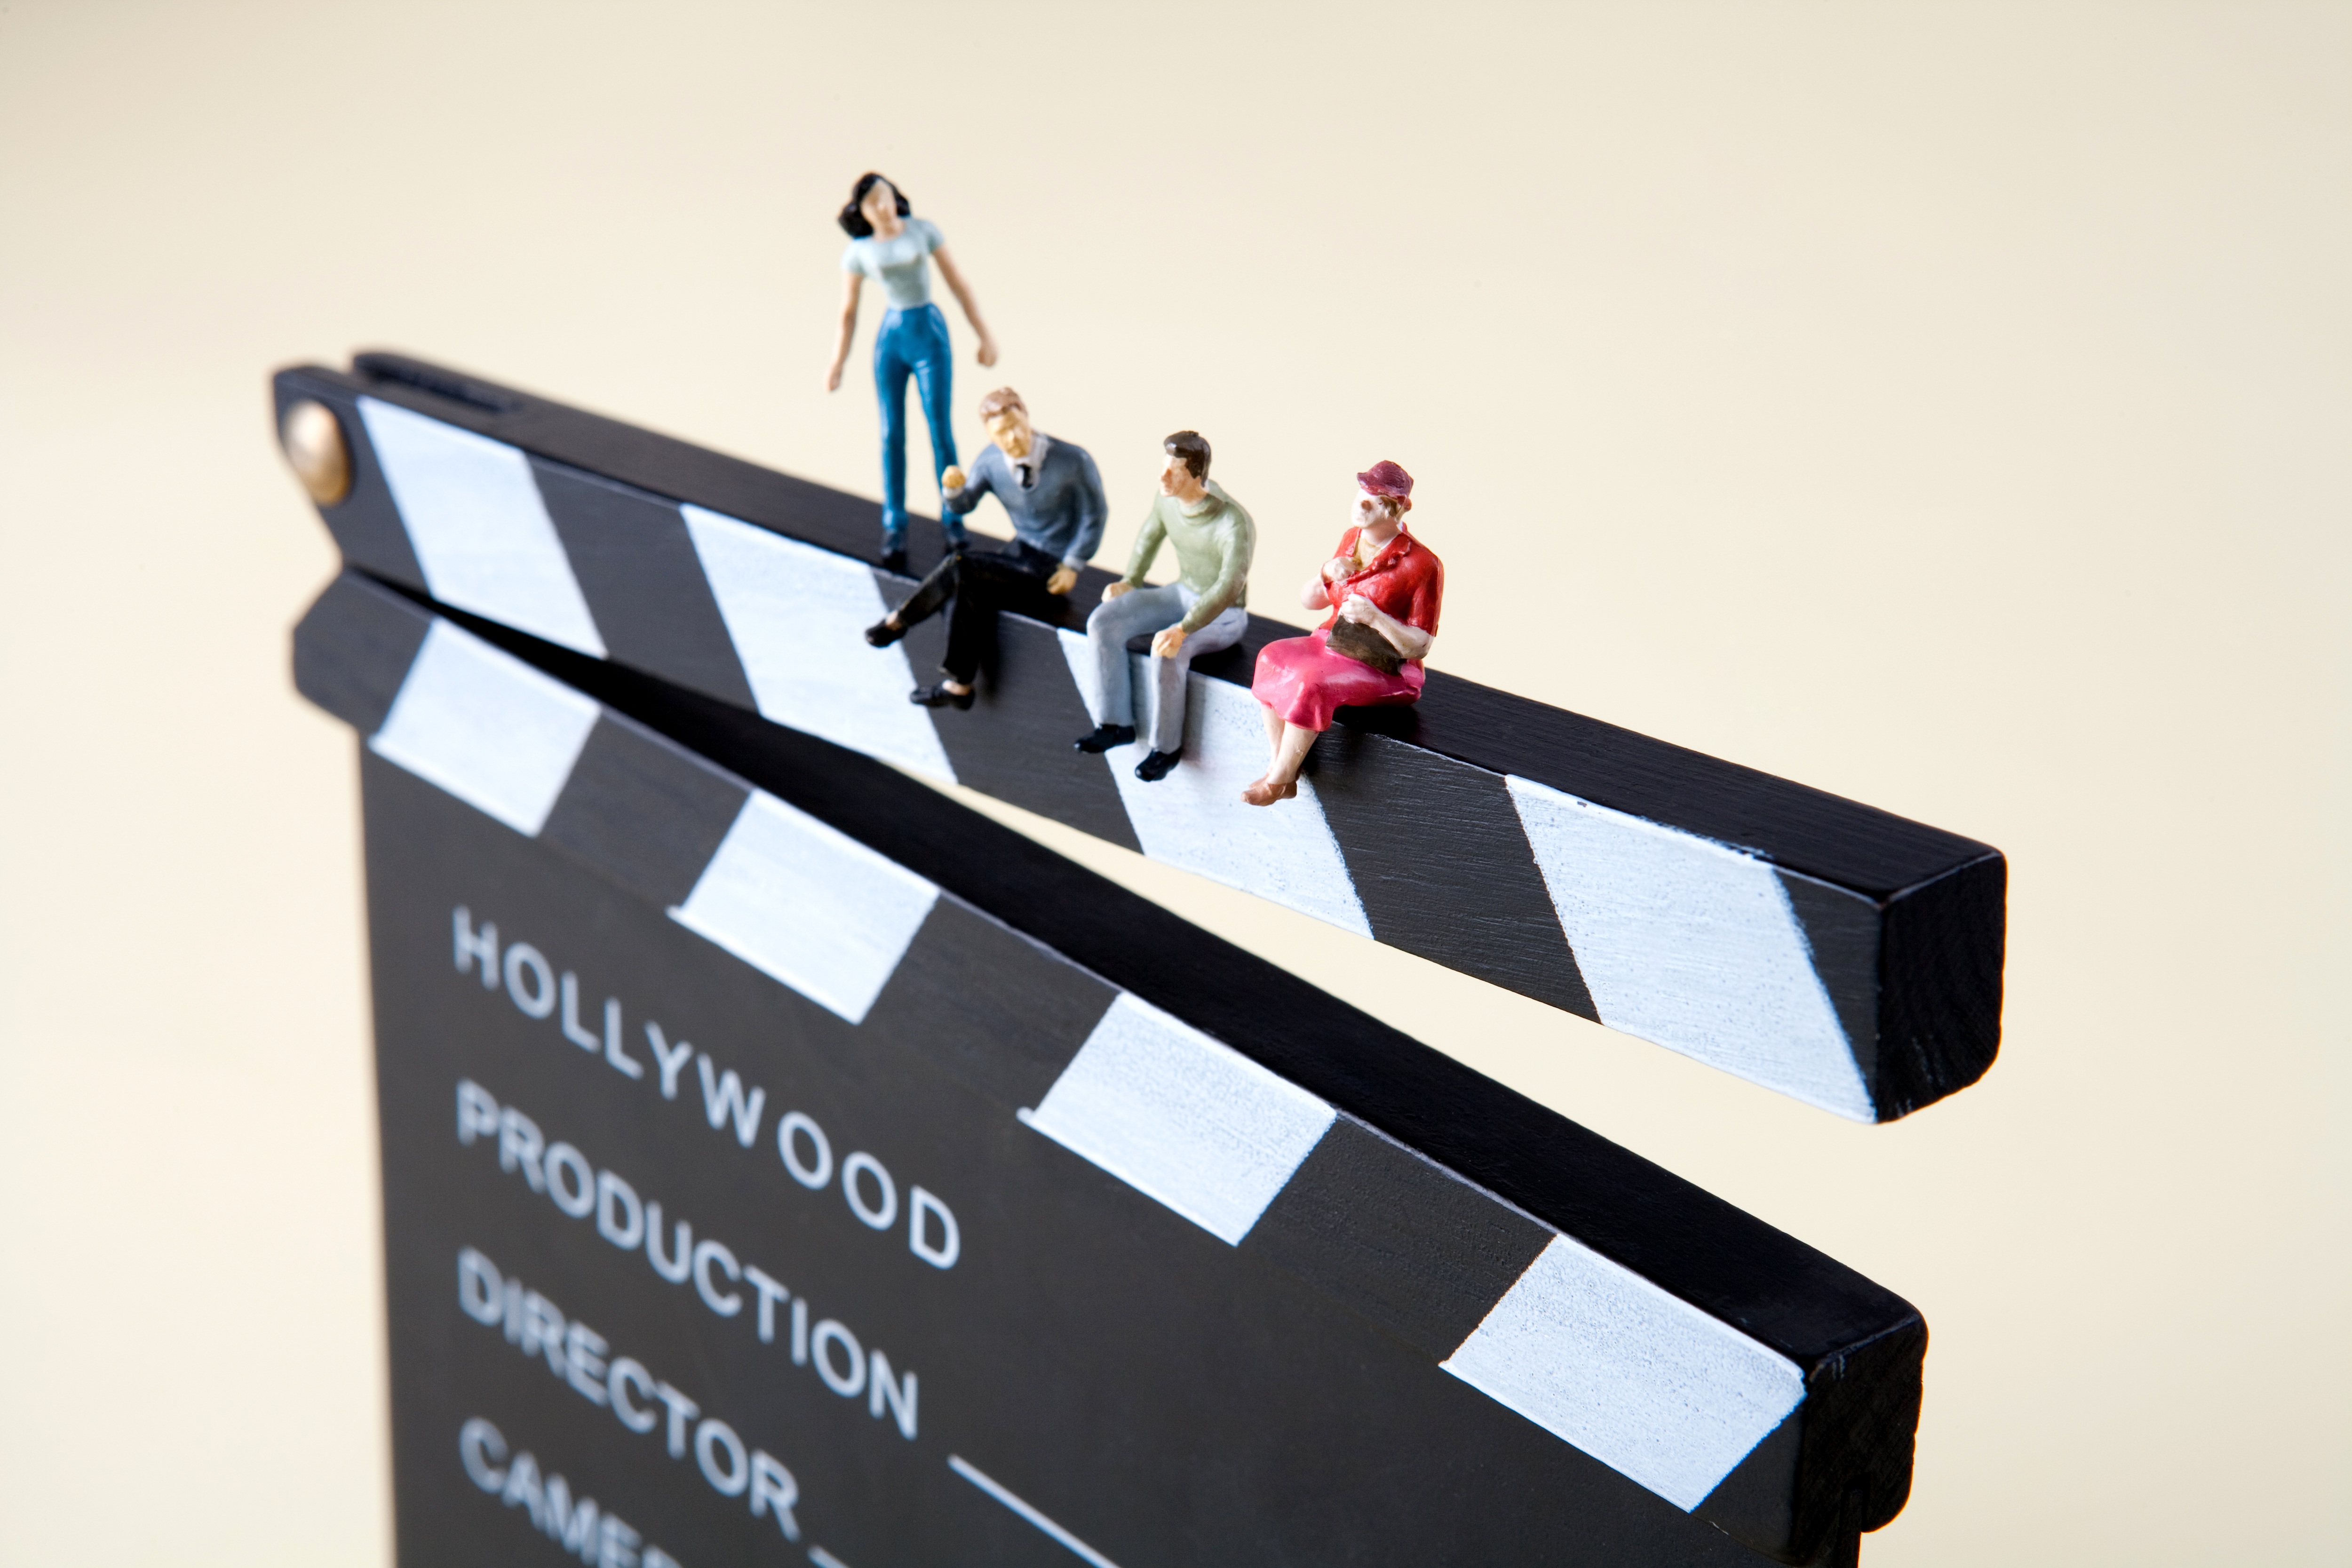 Claqueta de cine con los textos “Hollywood”, “Production”, “Director” y cuatro figuras en su borde superior, a modo de personajes